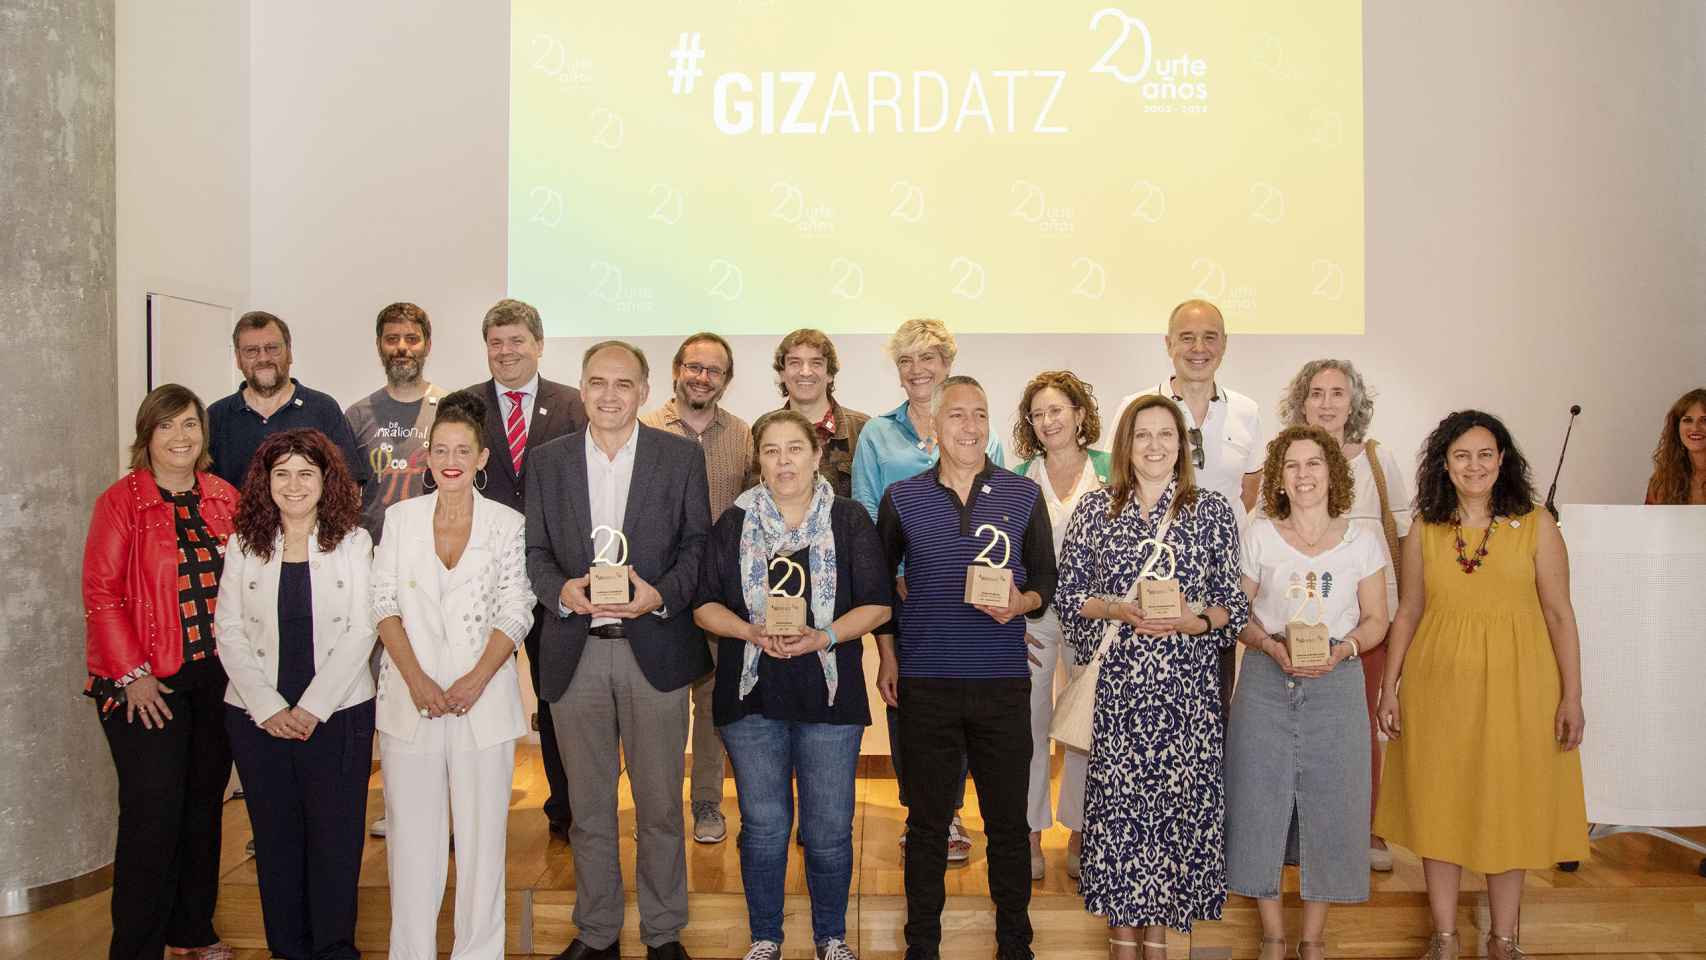 Gizardatz ha celebrado su 20 aniversario en el Palacio Euskalduna / CV